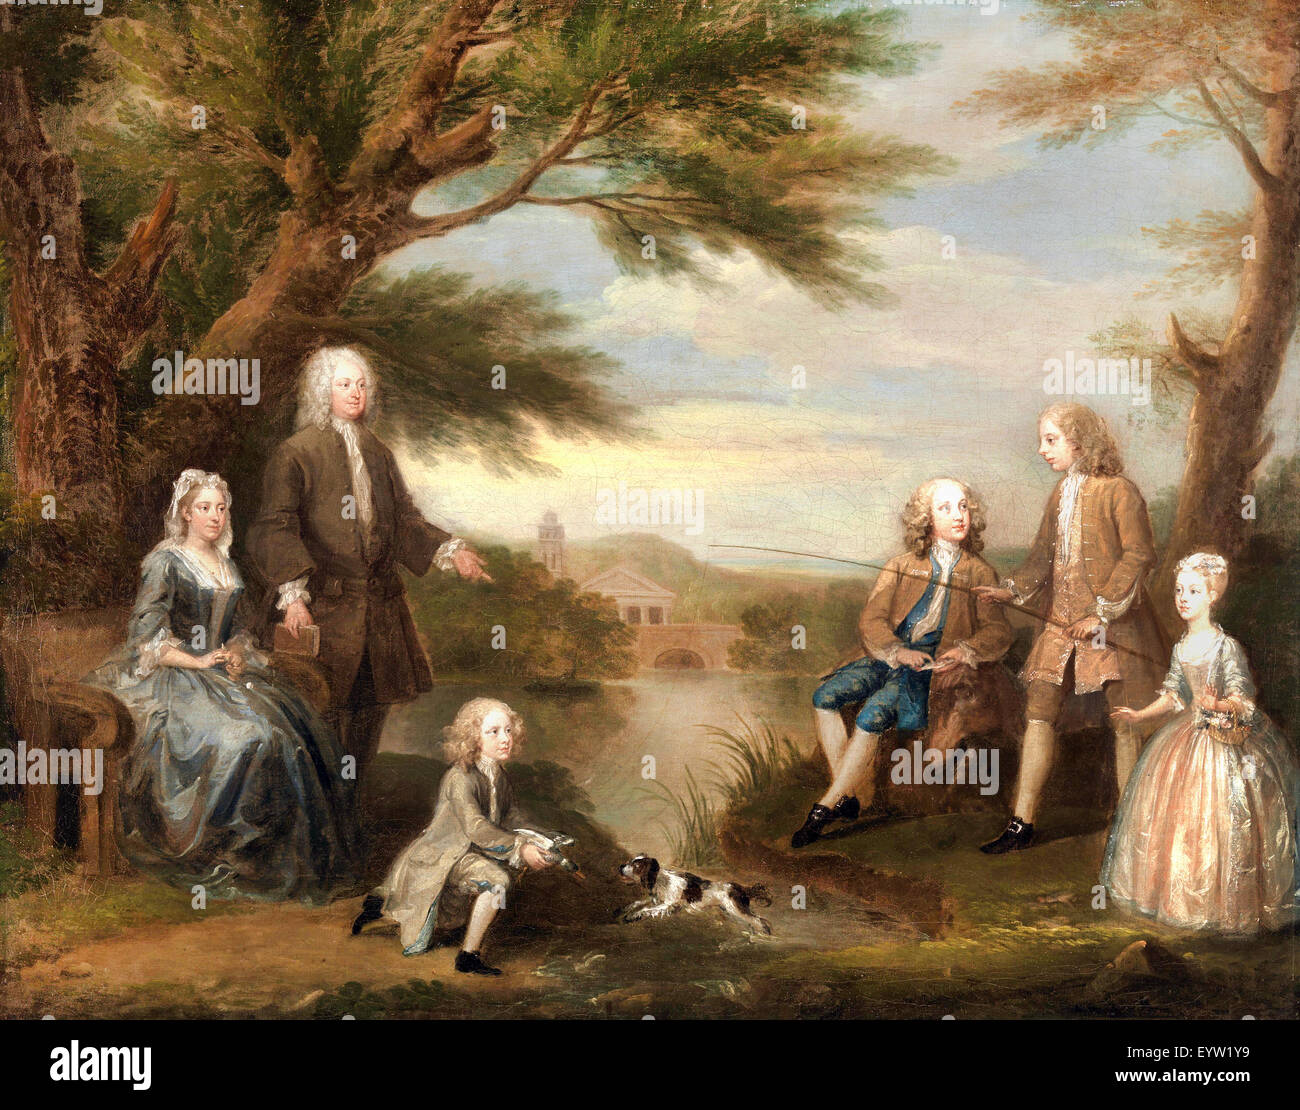 William Hogarth, John et Elizabeth Jeffreys et leurs enfants 1730 Huile sur toile. Yale Center for British Art, New Haven, USA. Banque D'Images